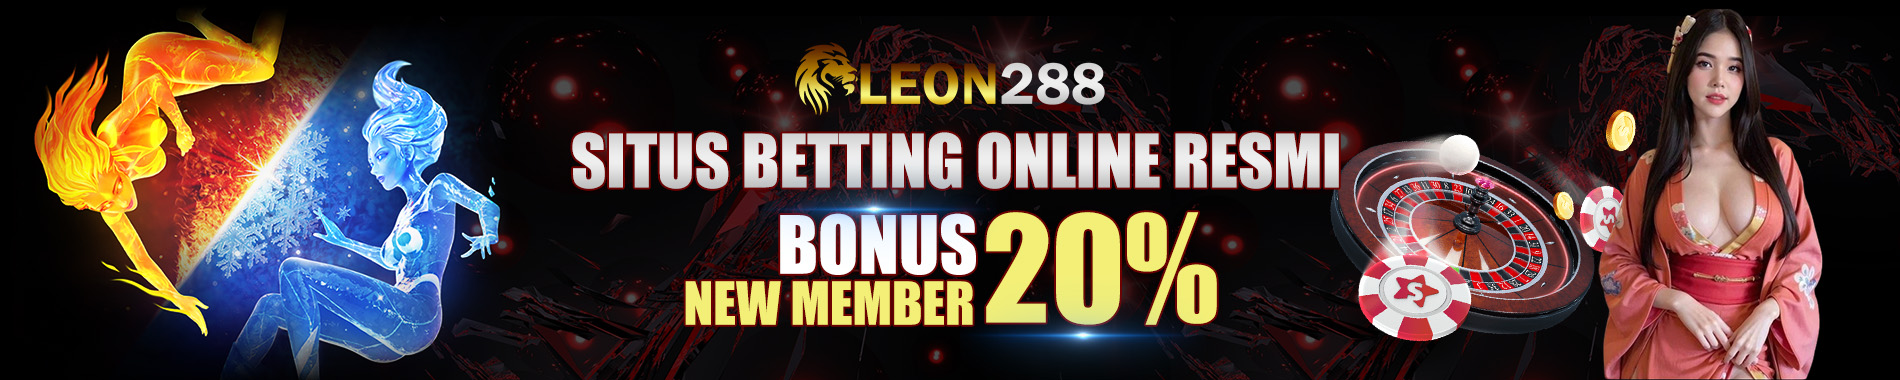 LEON288 Situs Betting Online Resmi